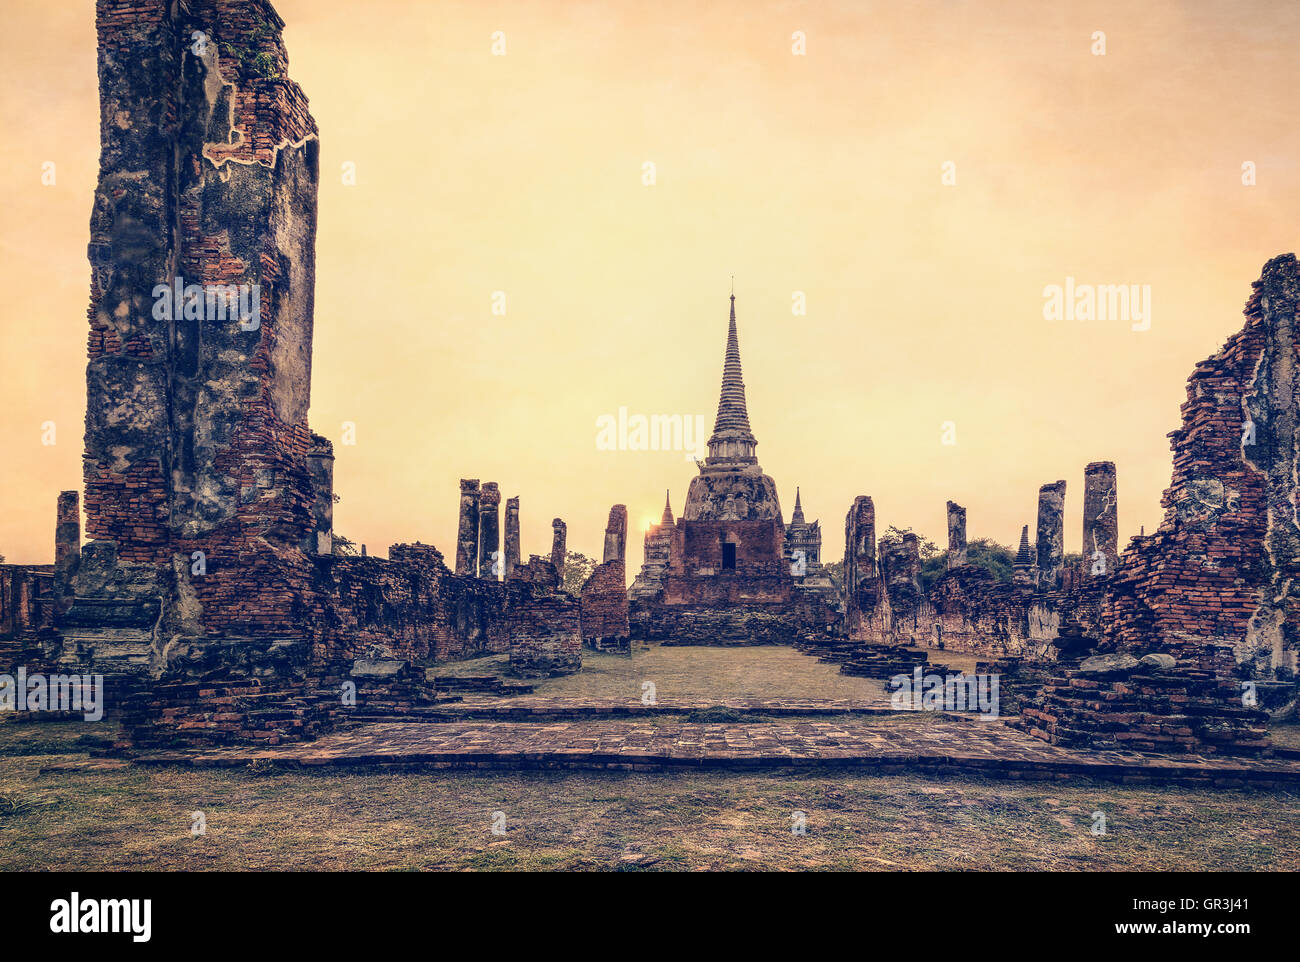 Agregar textura efecto Vintage Style, ruinas antiguas y la Pagoda de Wat Phra Si Sanphet antiguo templo de famosas atracciones durante la puesta de sol Foto de stock